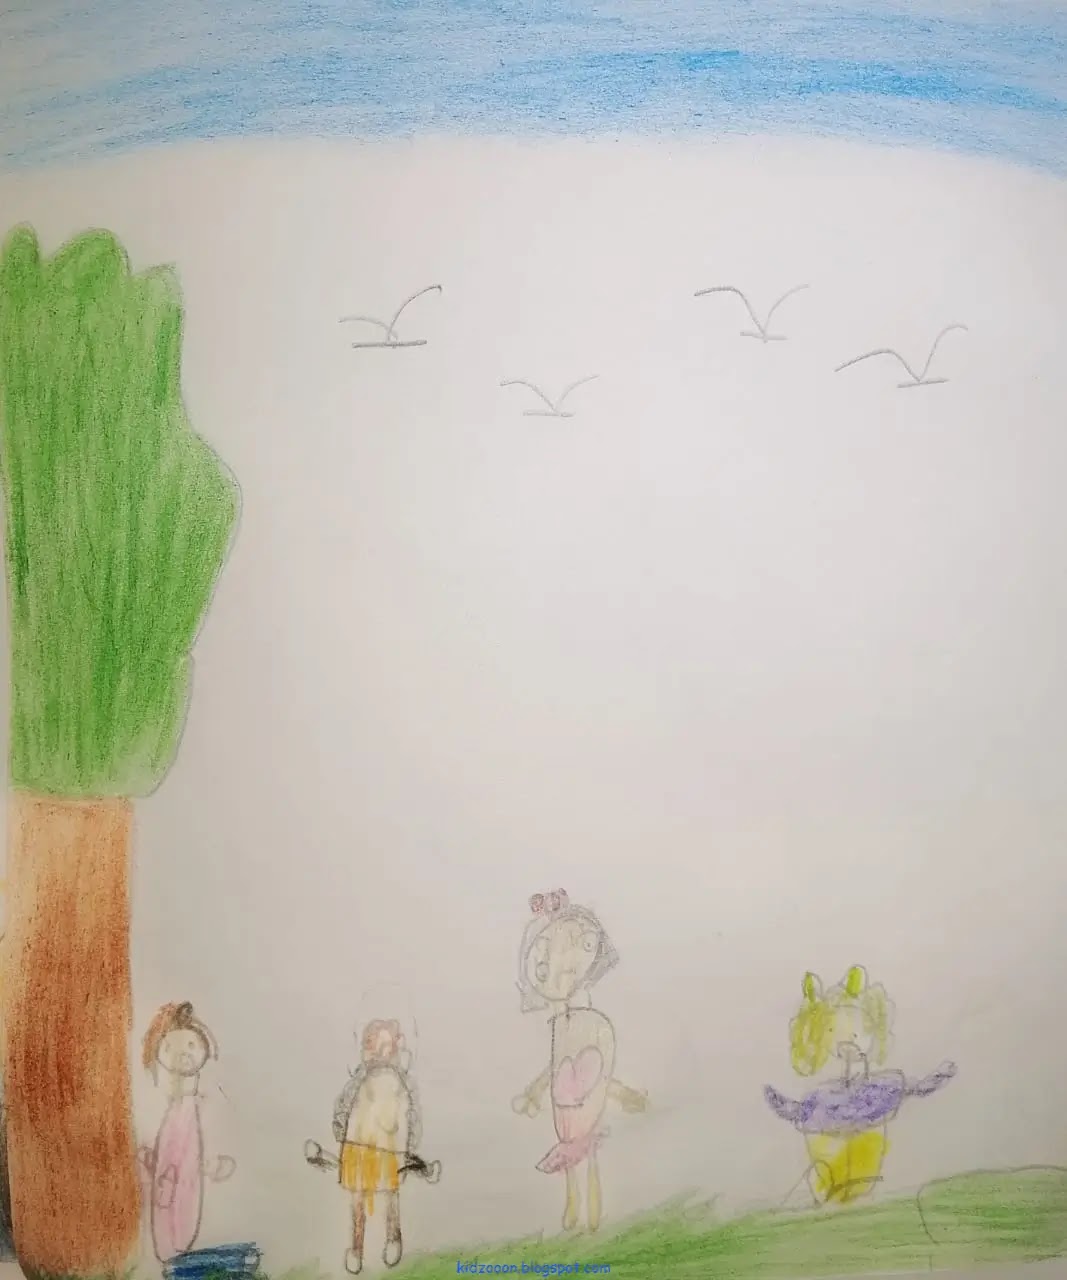 من قصص الأطفال - قصة: صندوق العيد - تأليف: زهراء كوثراني - فكرة ورسومات الطفلة: ملك مصطفى - موقع (كيدزوون | Kidzooon)